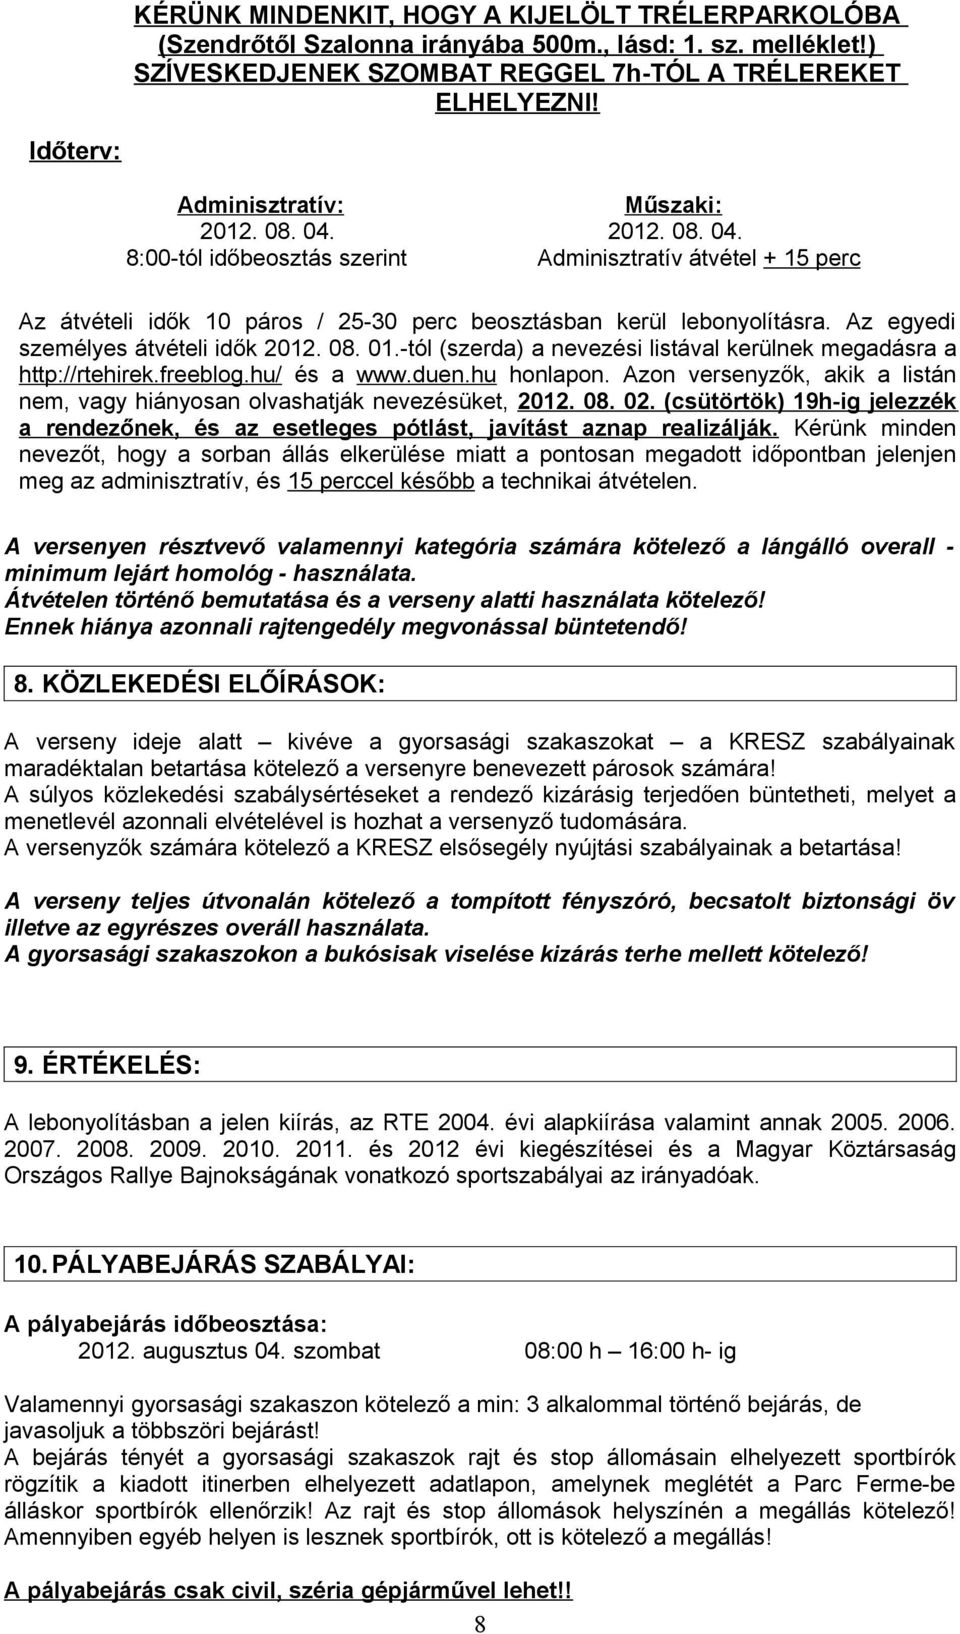 Az egyedi személyes átvételi idők 2012. 08. 01.-tól (szerda) a nevezési listával kerülnek megadásra a http://rtehirek.freeblog.hu/ és a www.duen.hu honlapon.